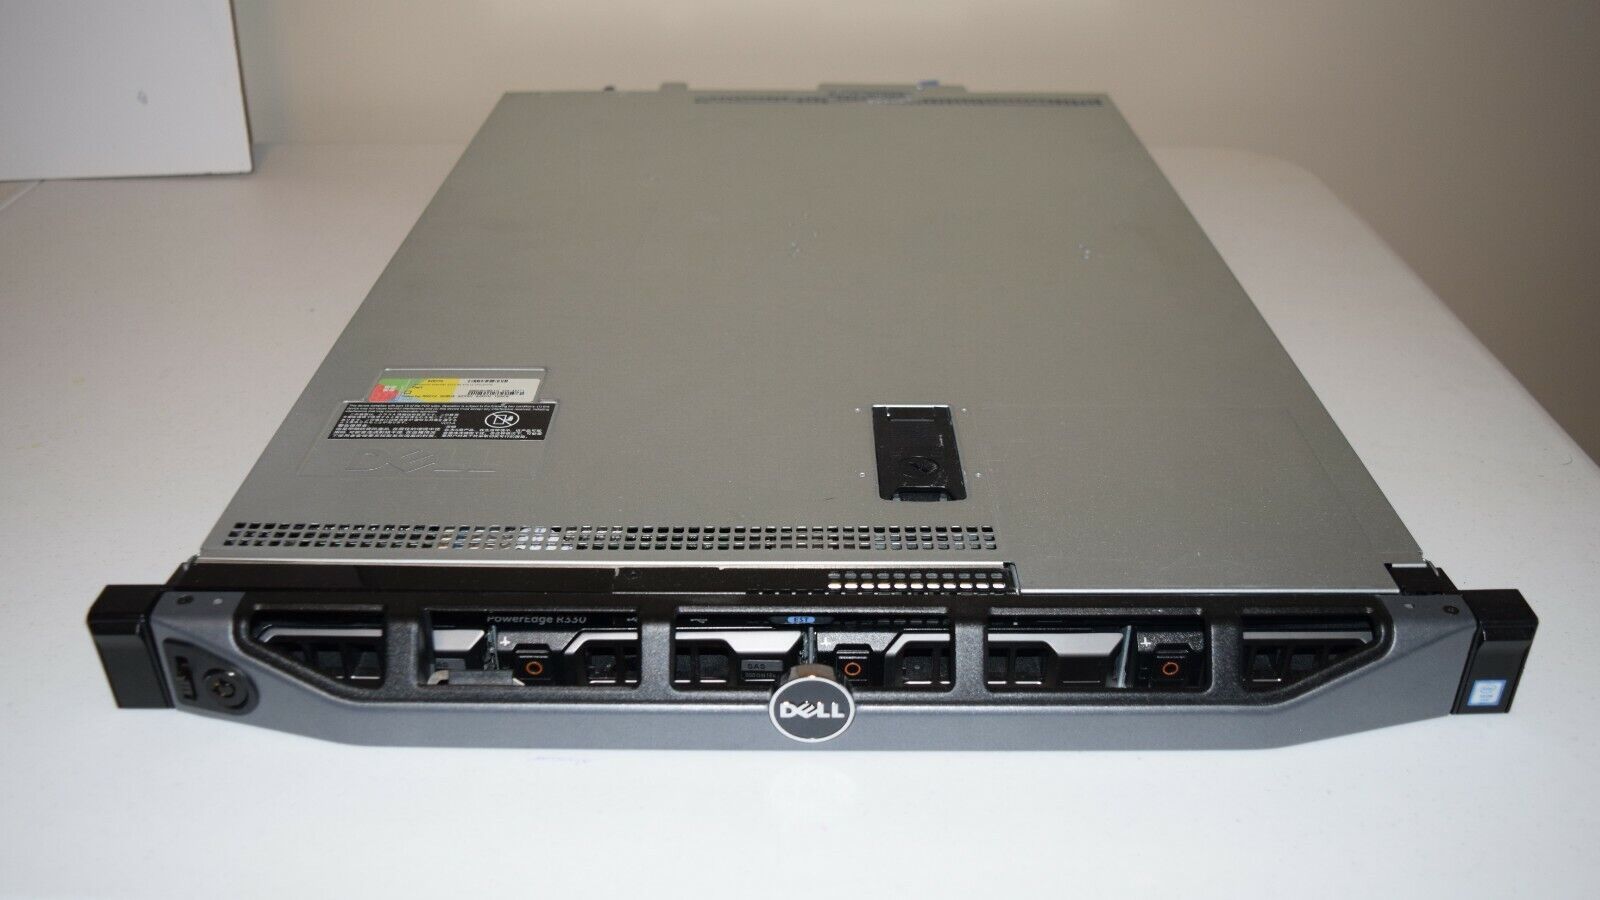 Dell PowerEdge R330 Server Intel Xeon E3-1230 v5, PERC H330, 32GB RAM 